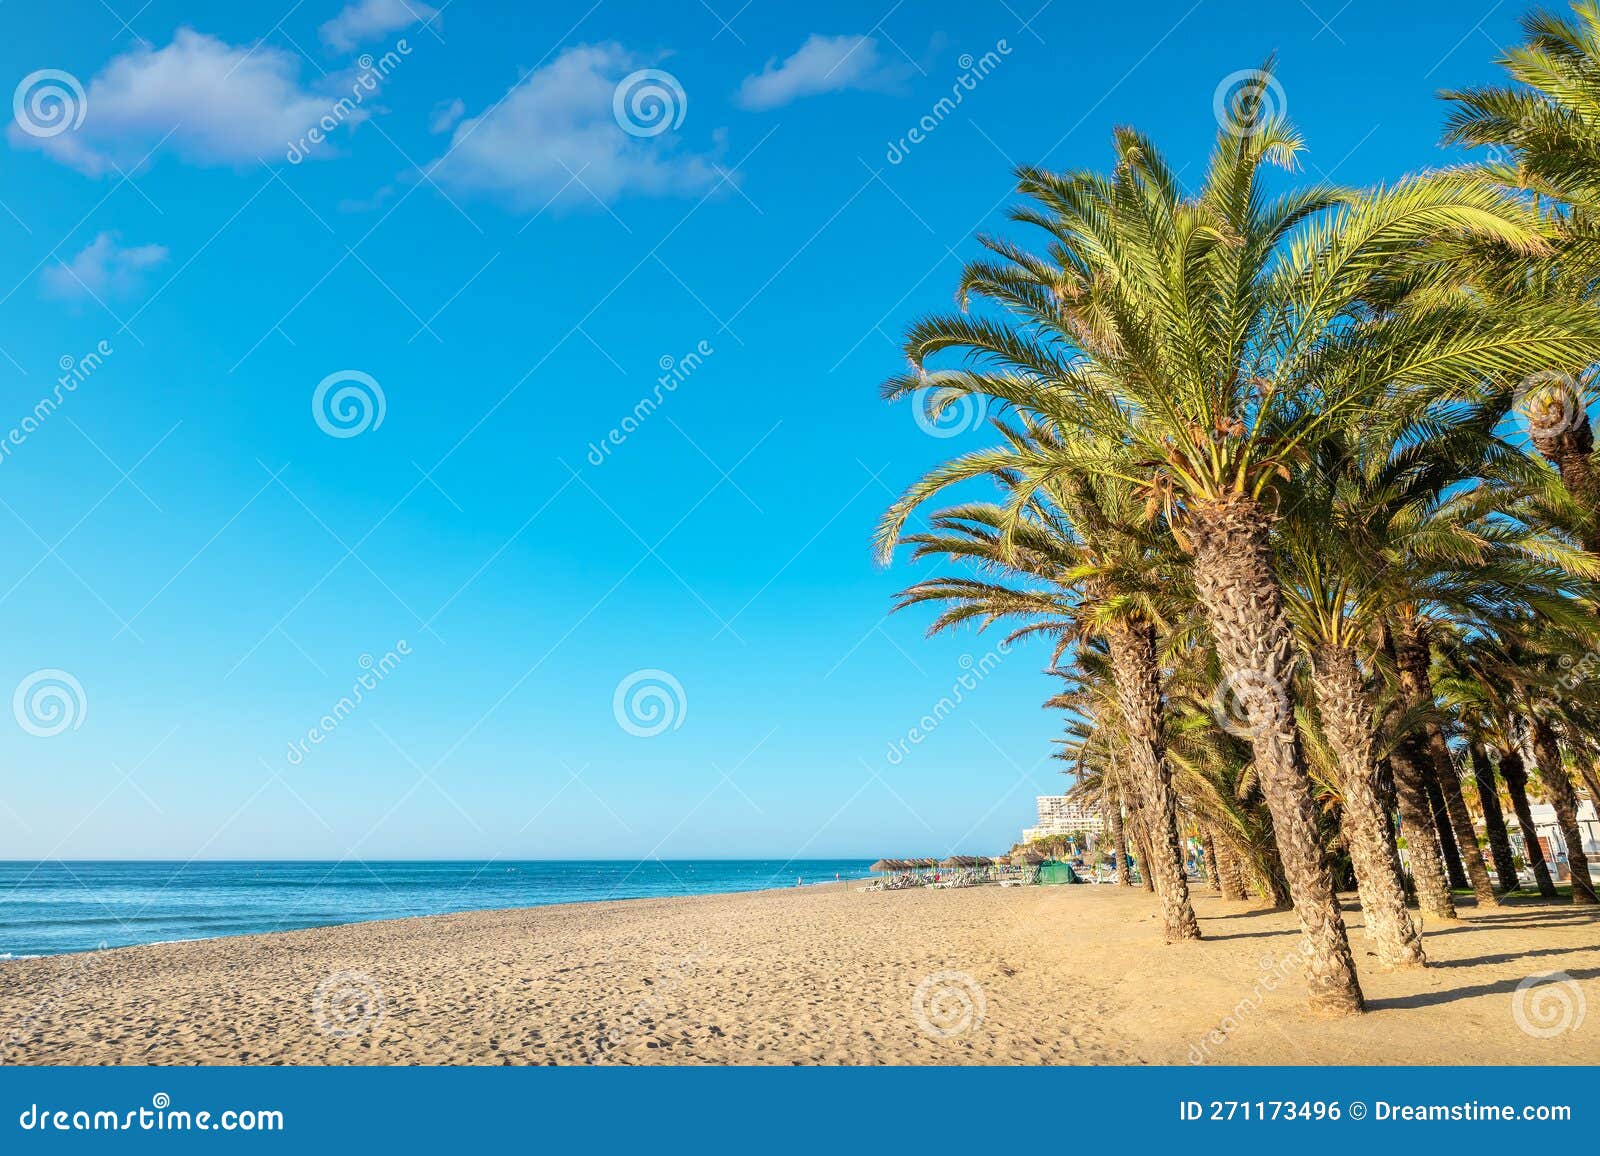 beach in torremolinos. andalusia, spain